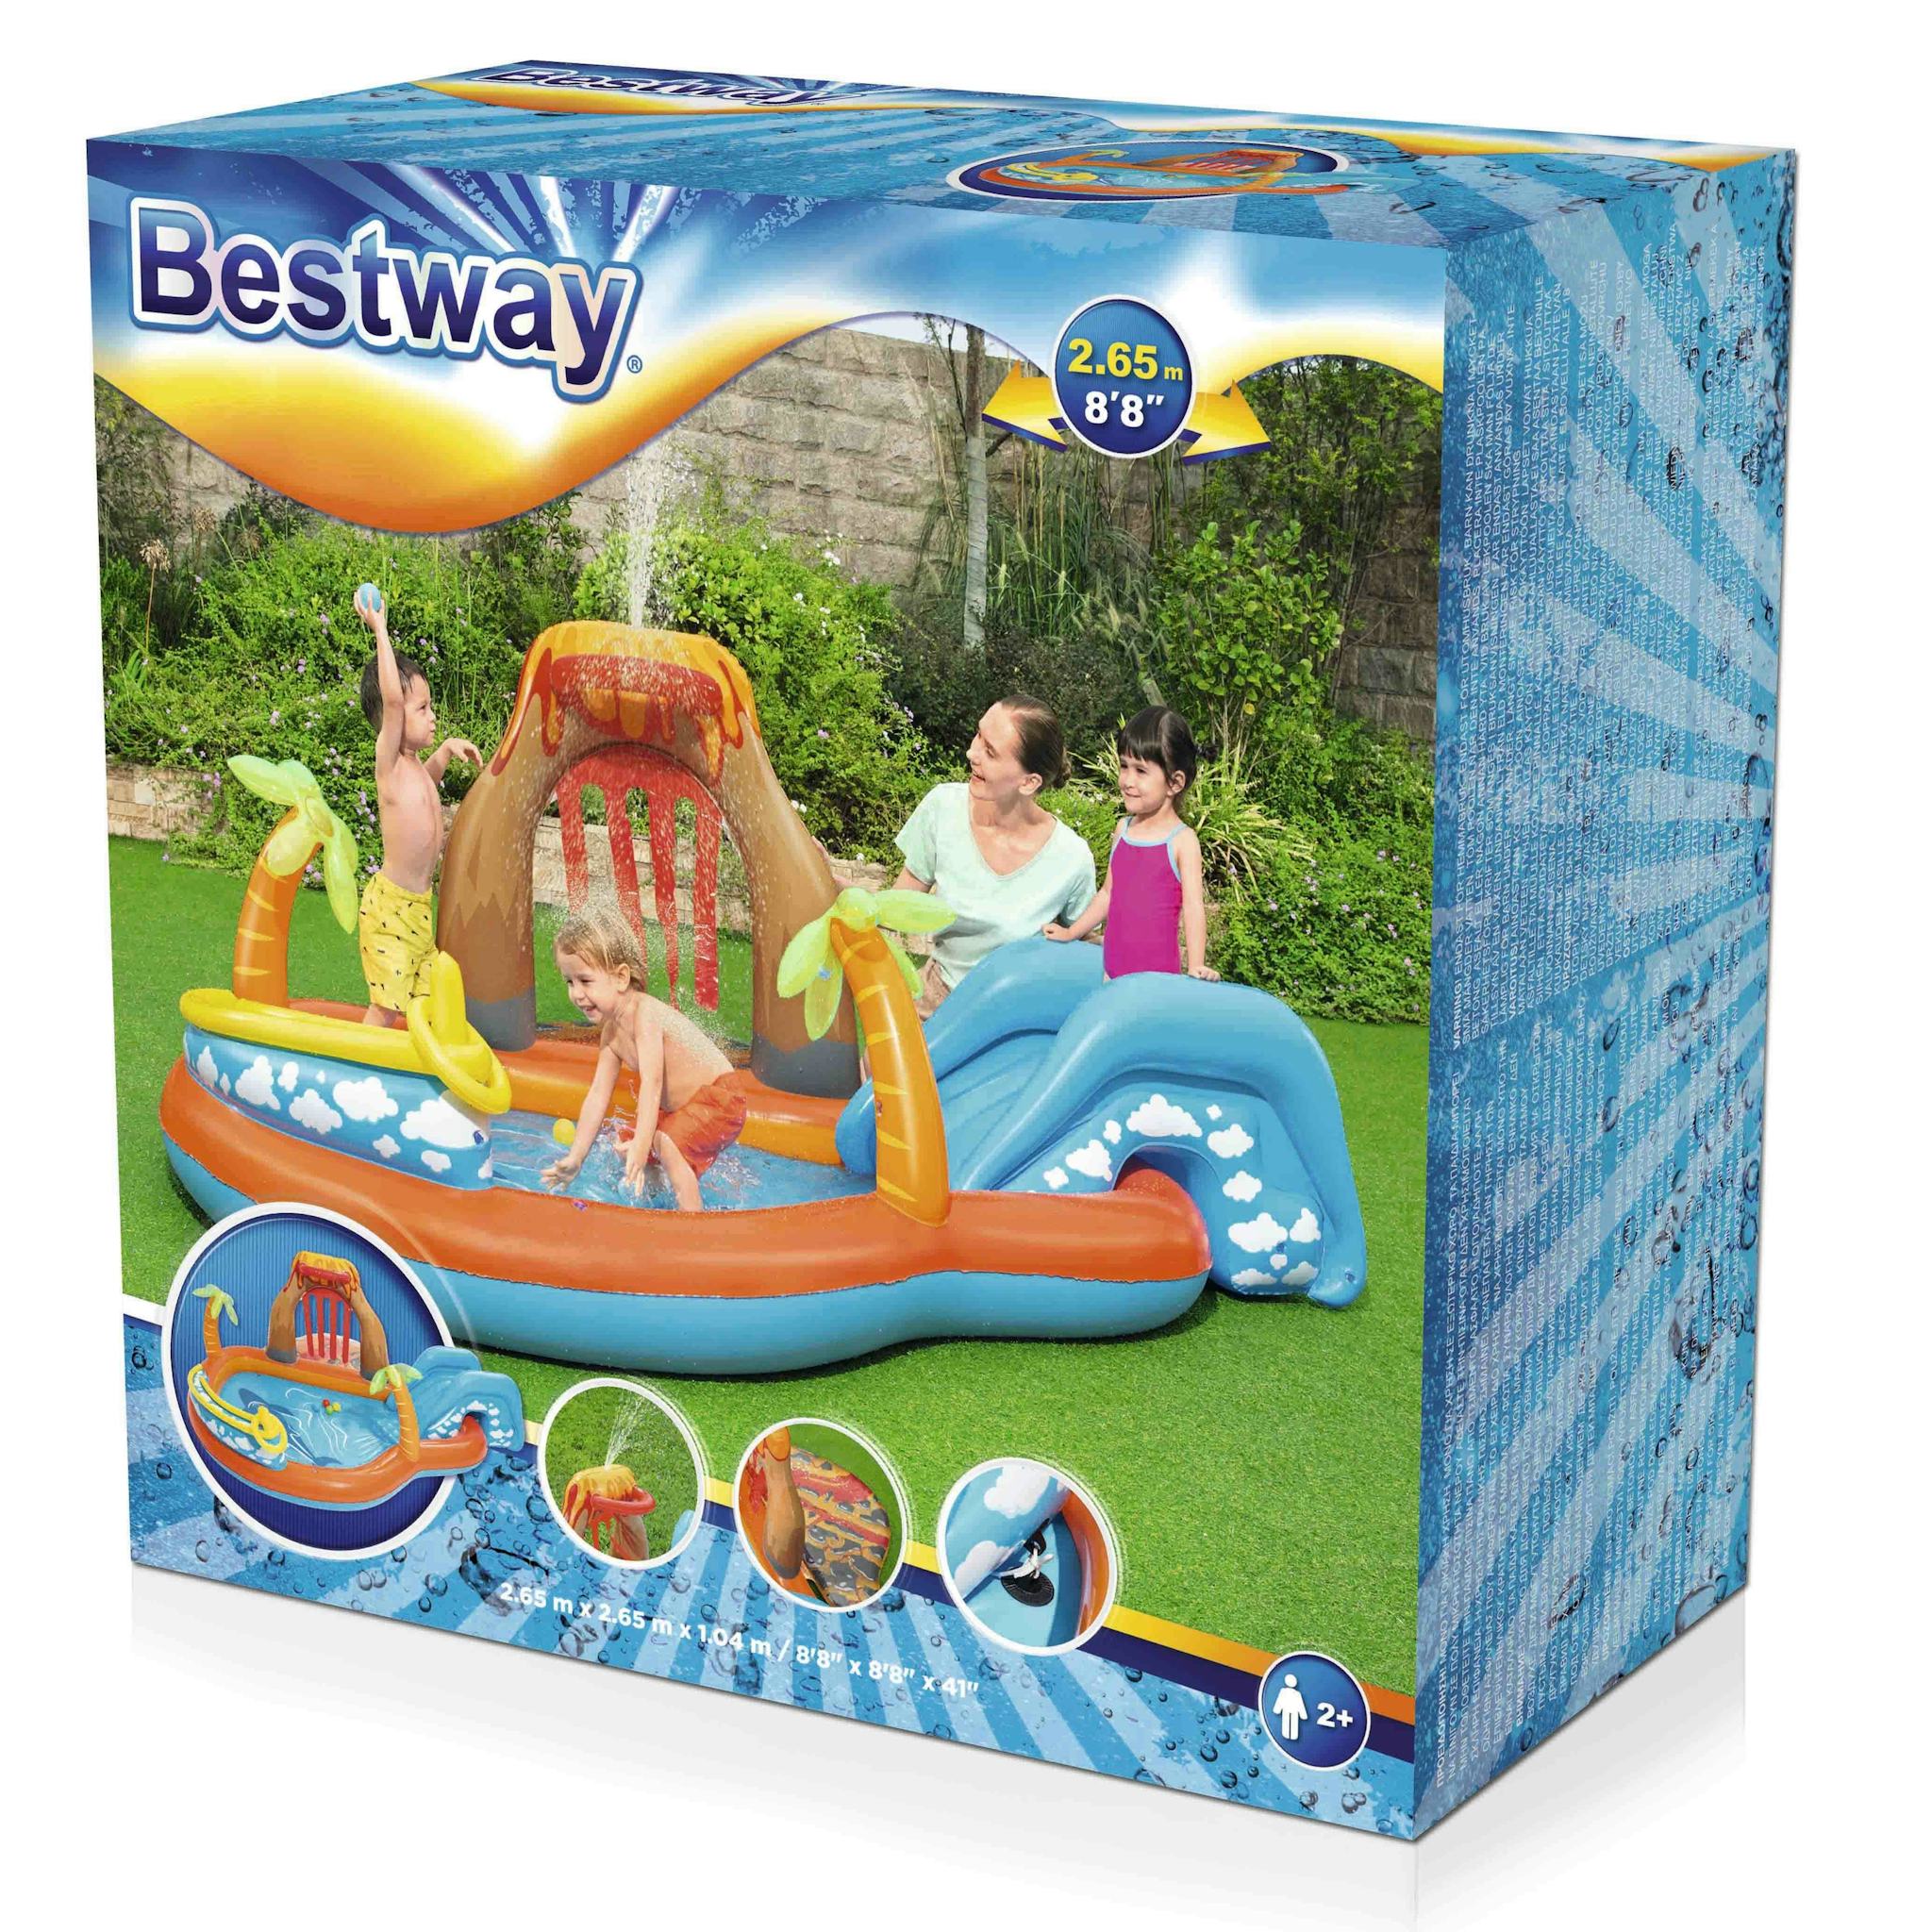 Giochi gonfiabili per bambini Playcenter gonfiabile con scivolo a forma di vulcano Bestway 8